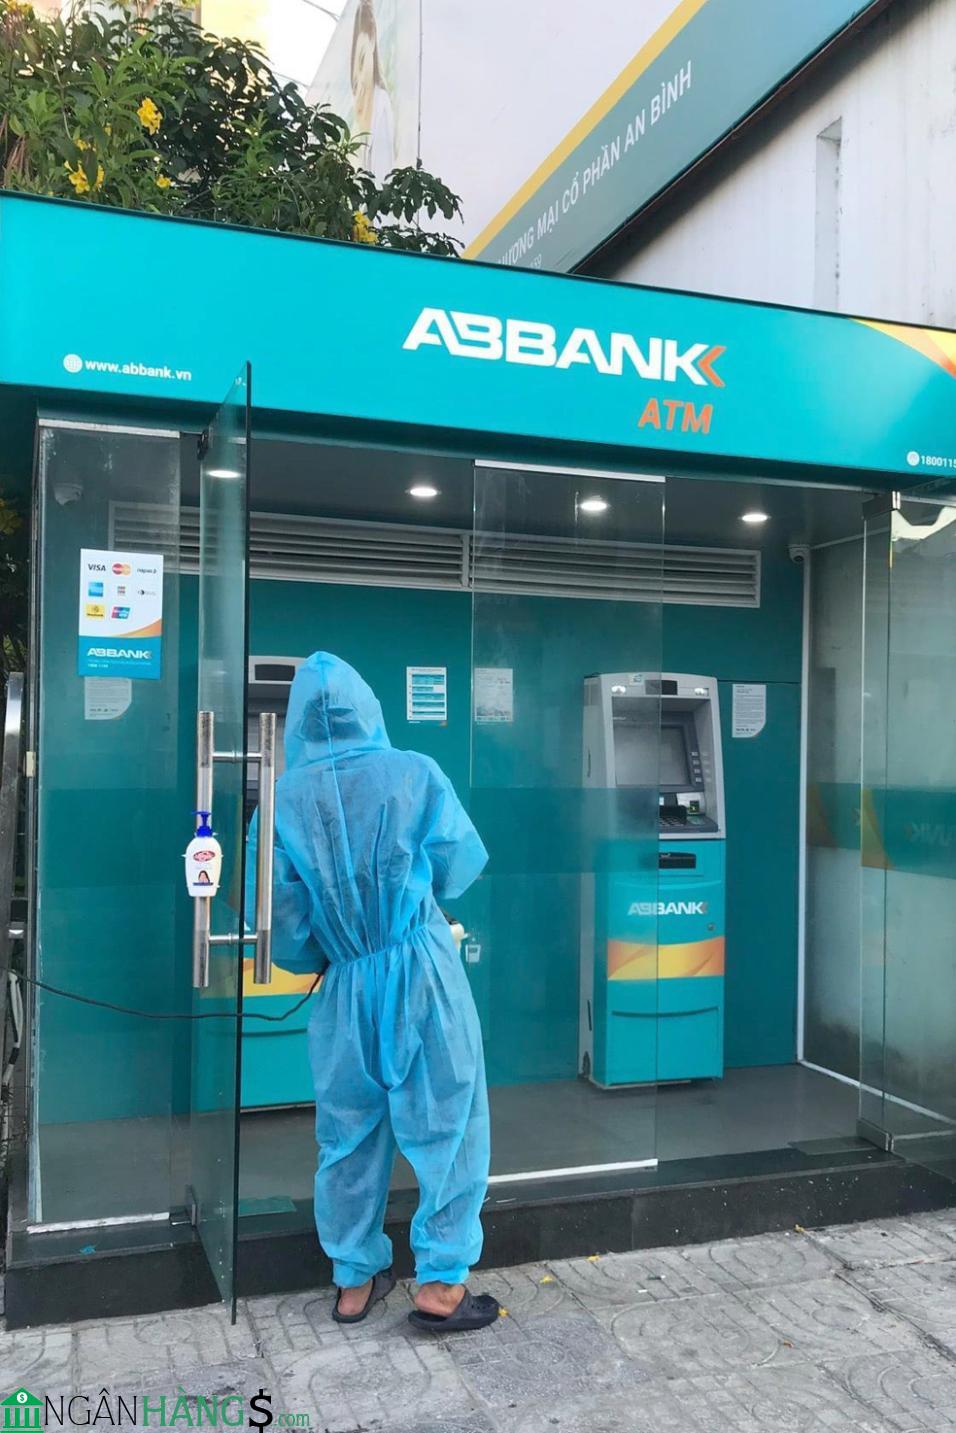 Ảnh Cây ATM ngân hàng An Bình ABBank Lữ Đoàn Pháo Binh 40 1